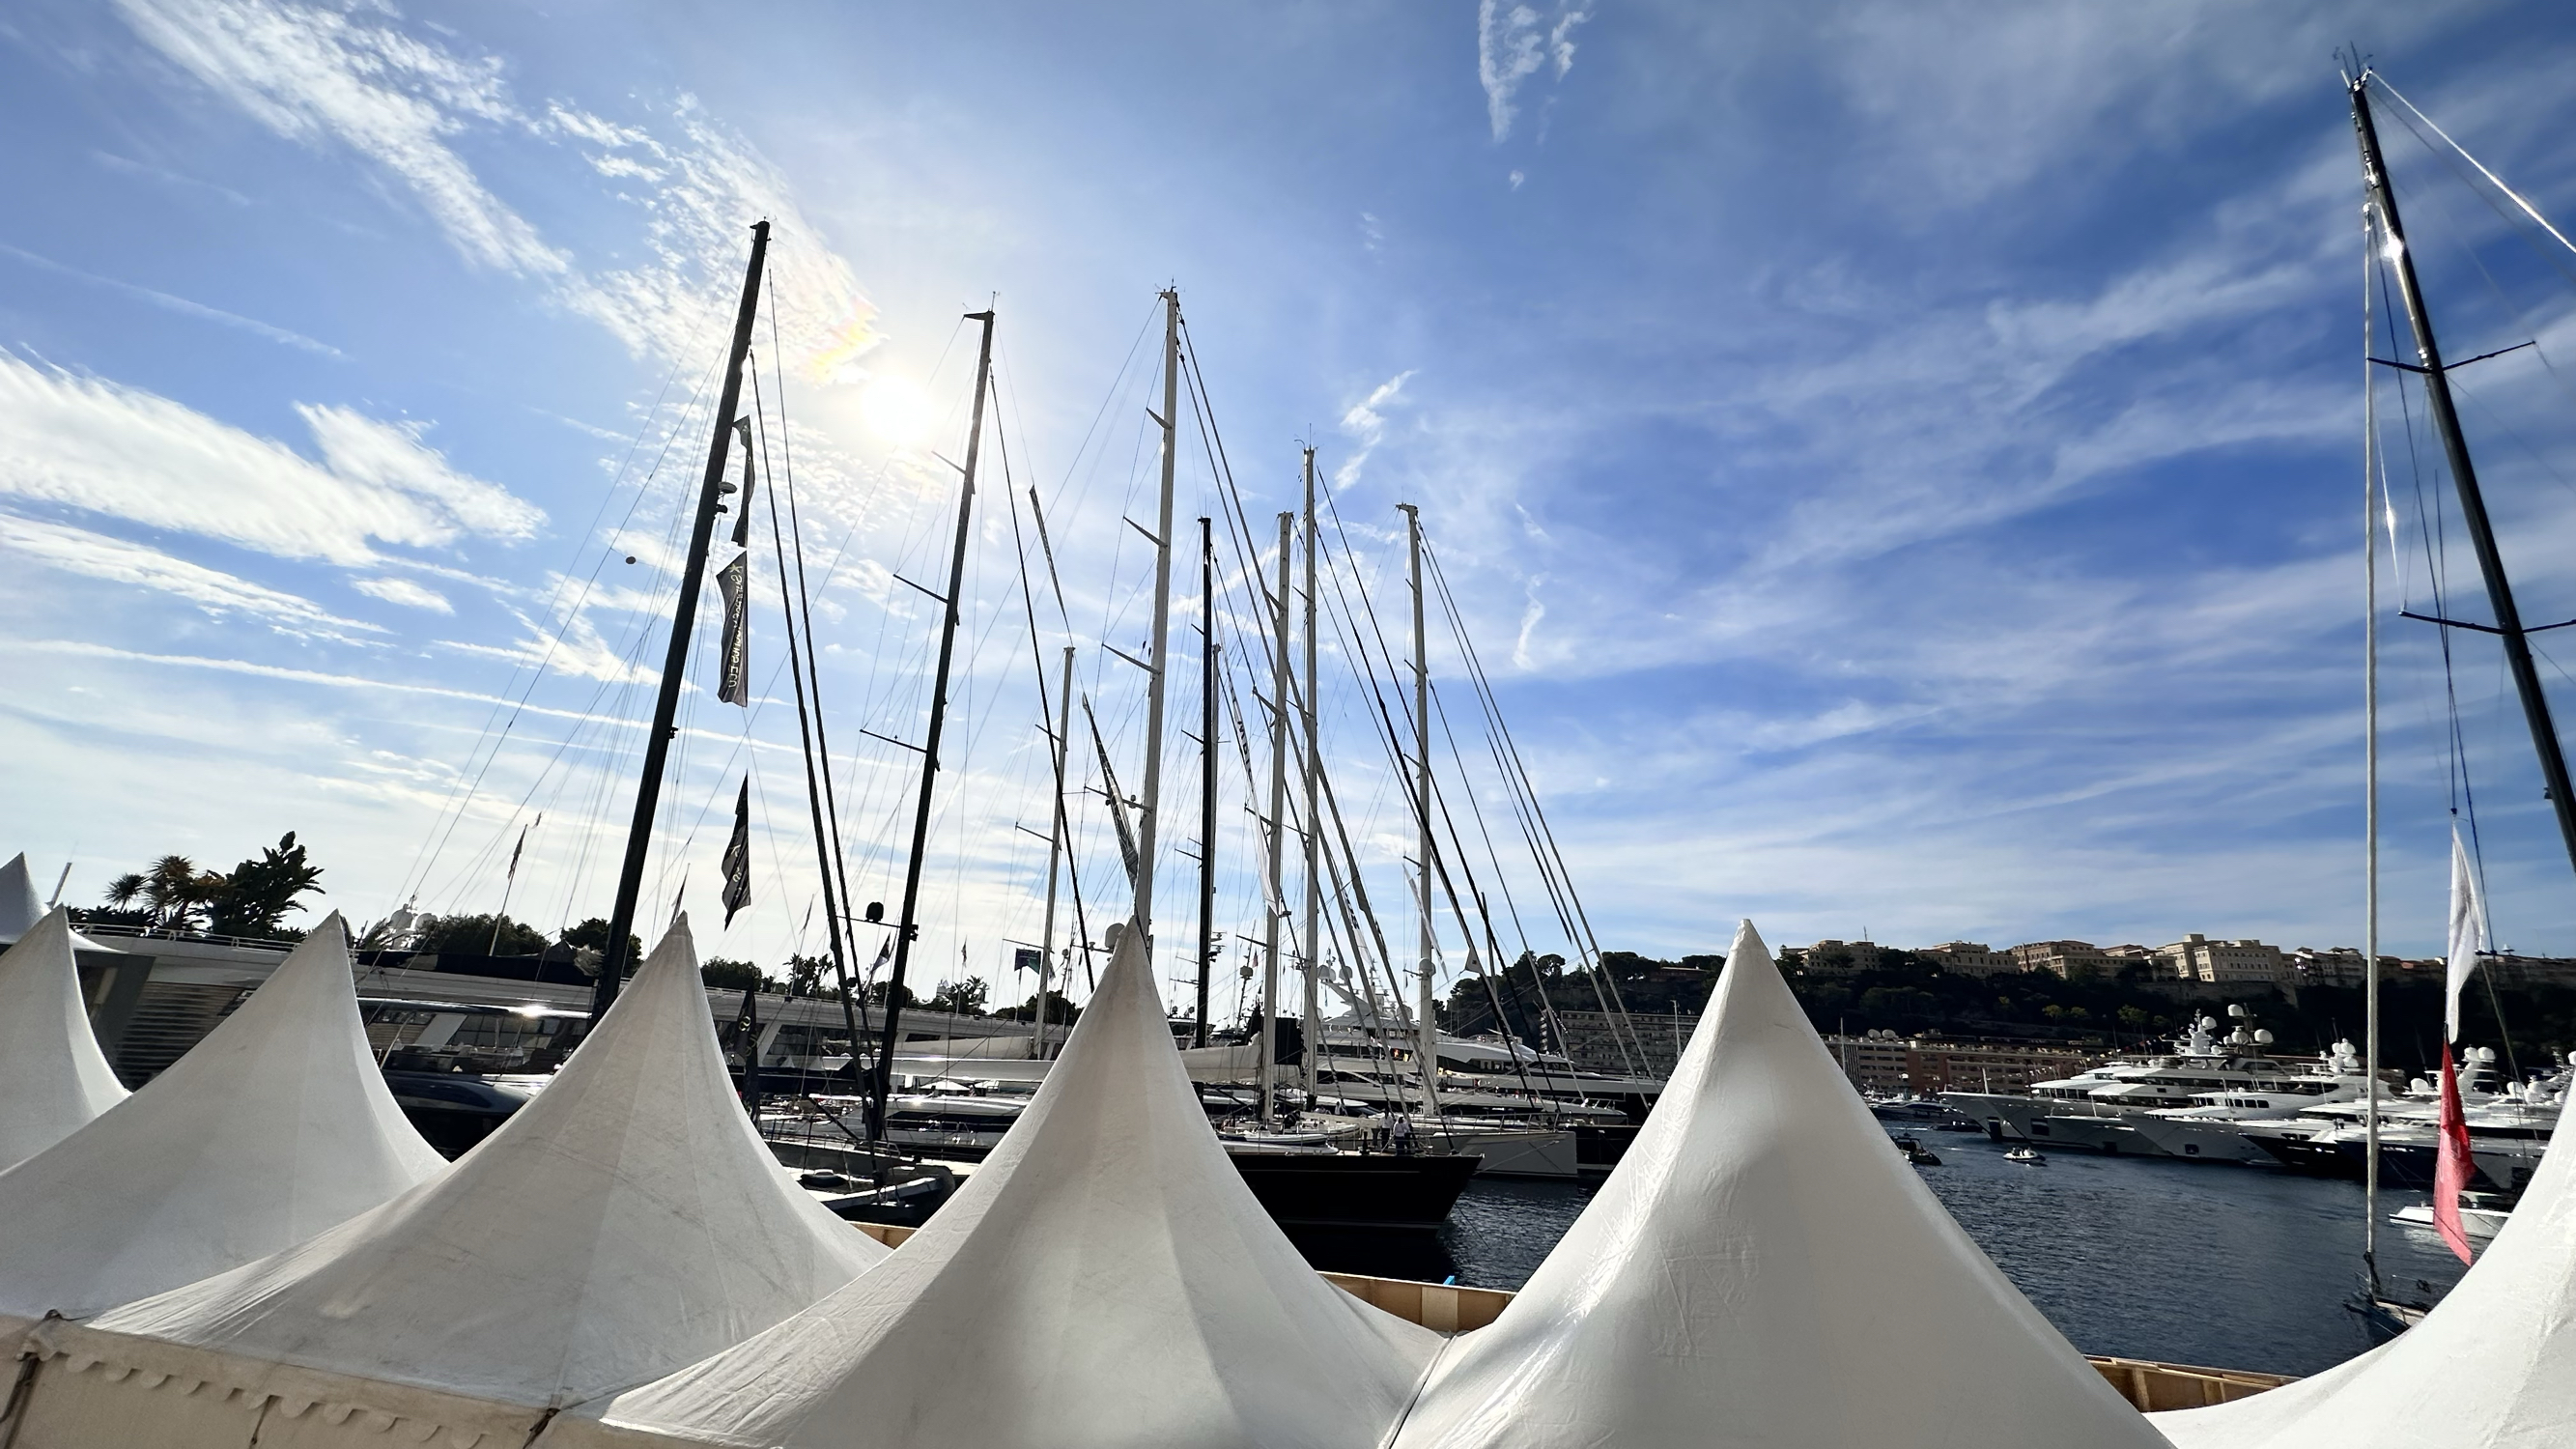 詹姆斯·邦德电影《黄金眼》的拍摄地摩纳哥大力神港Monaco